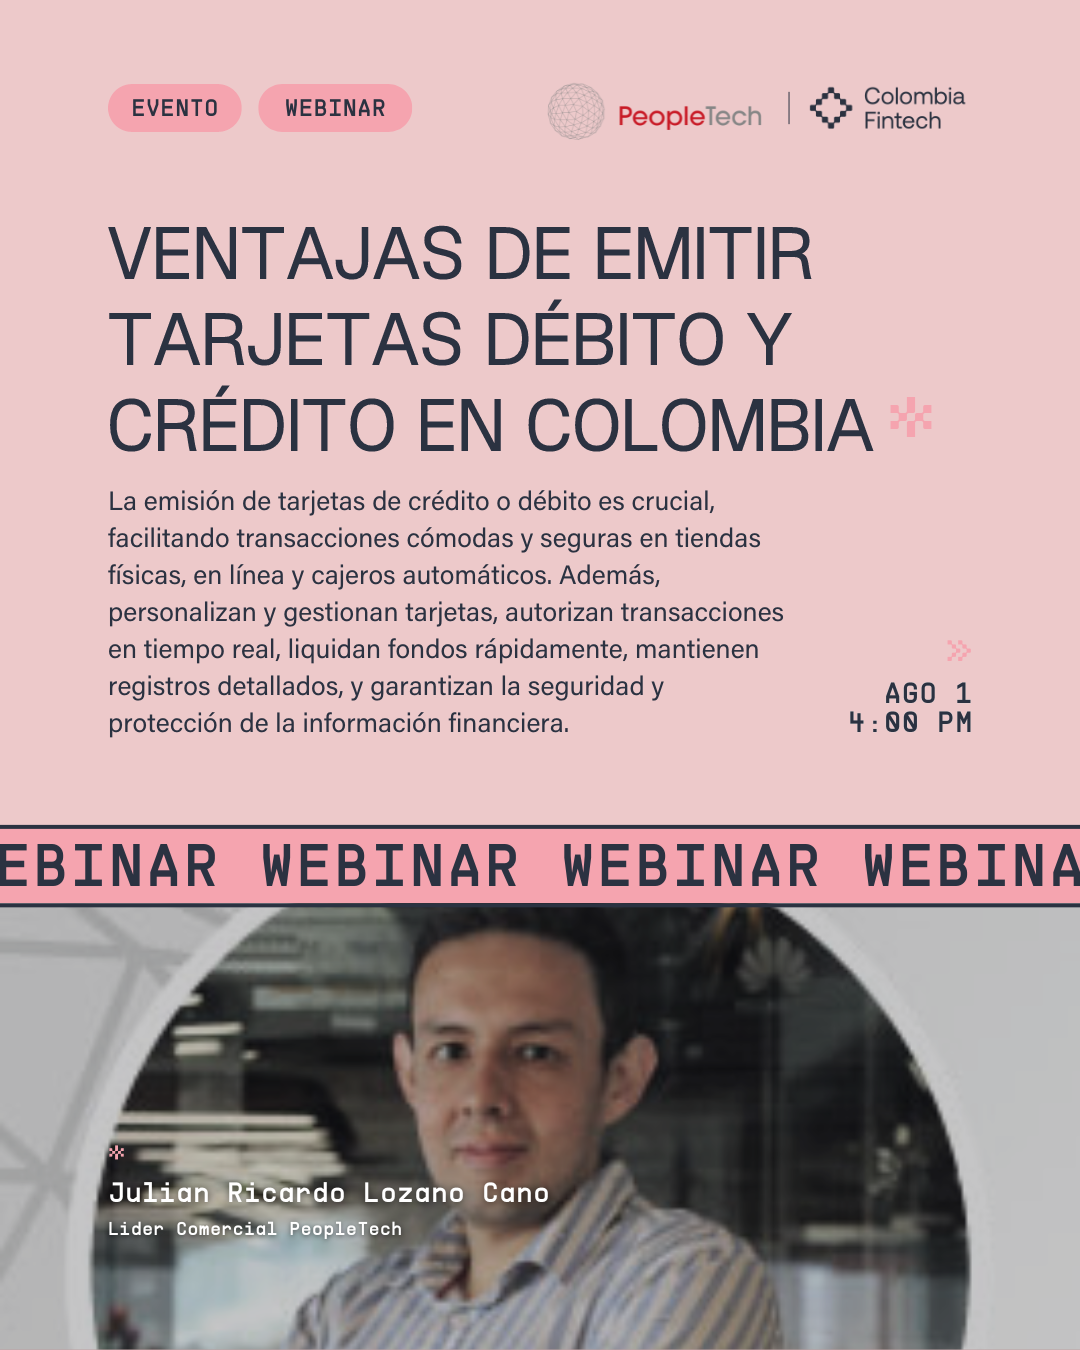 VENTAJAS DE EMITIR TARJETAS DEBITO/CREDITO EN COLOMBIA